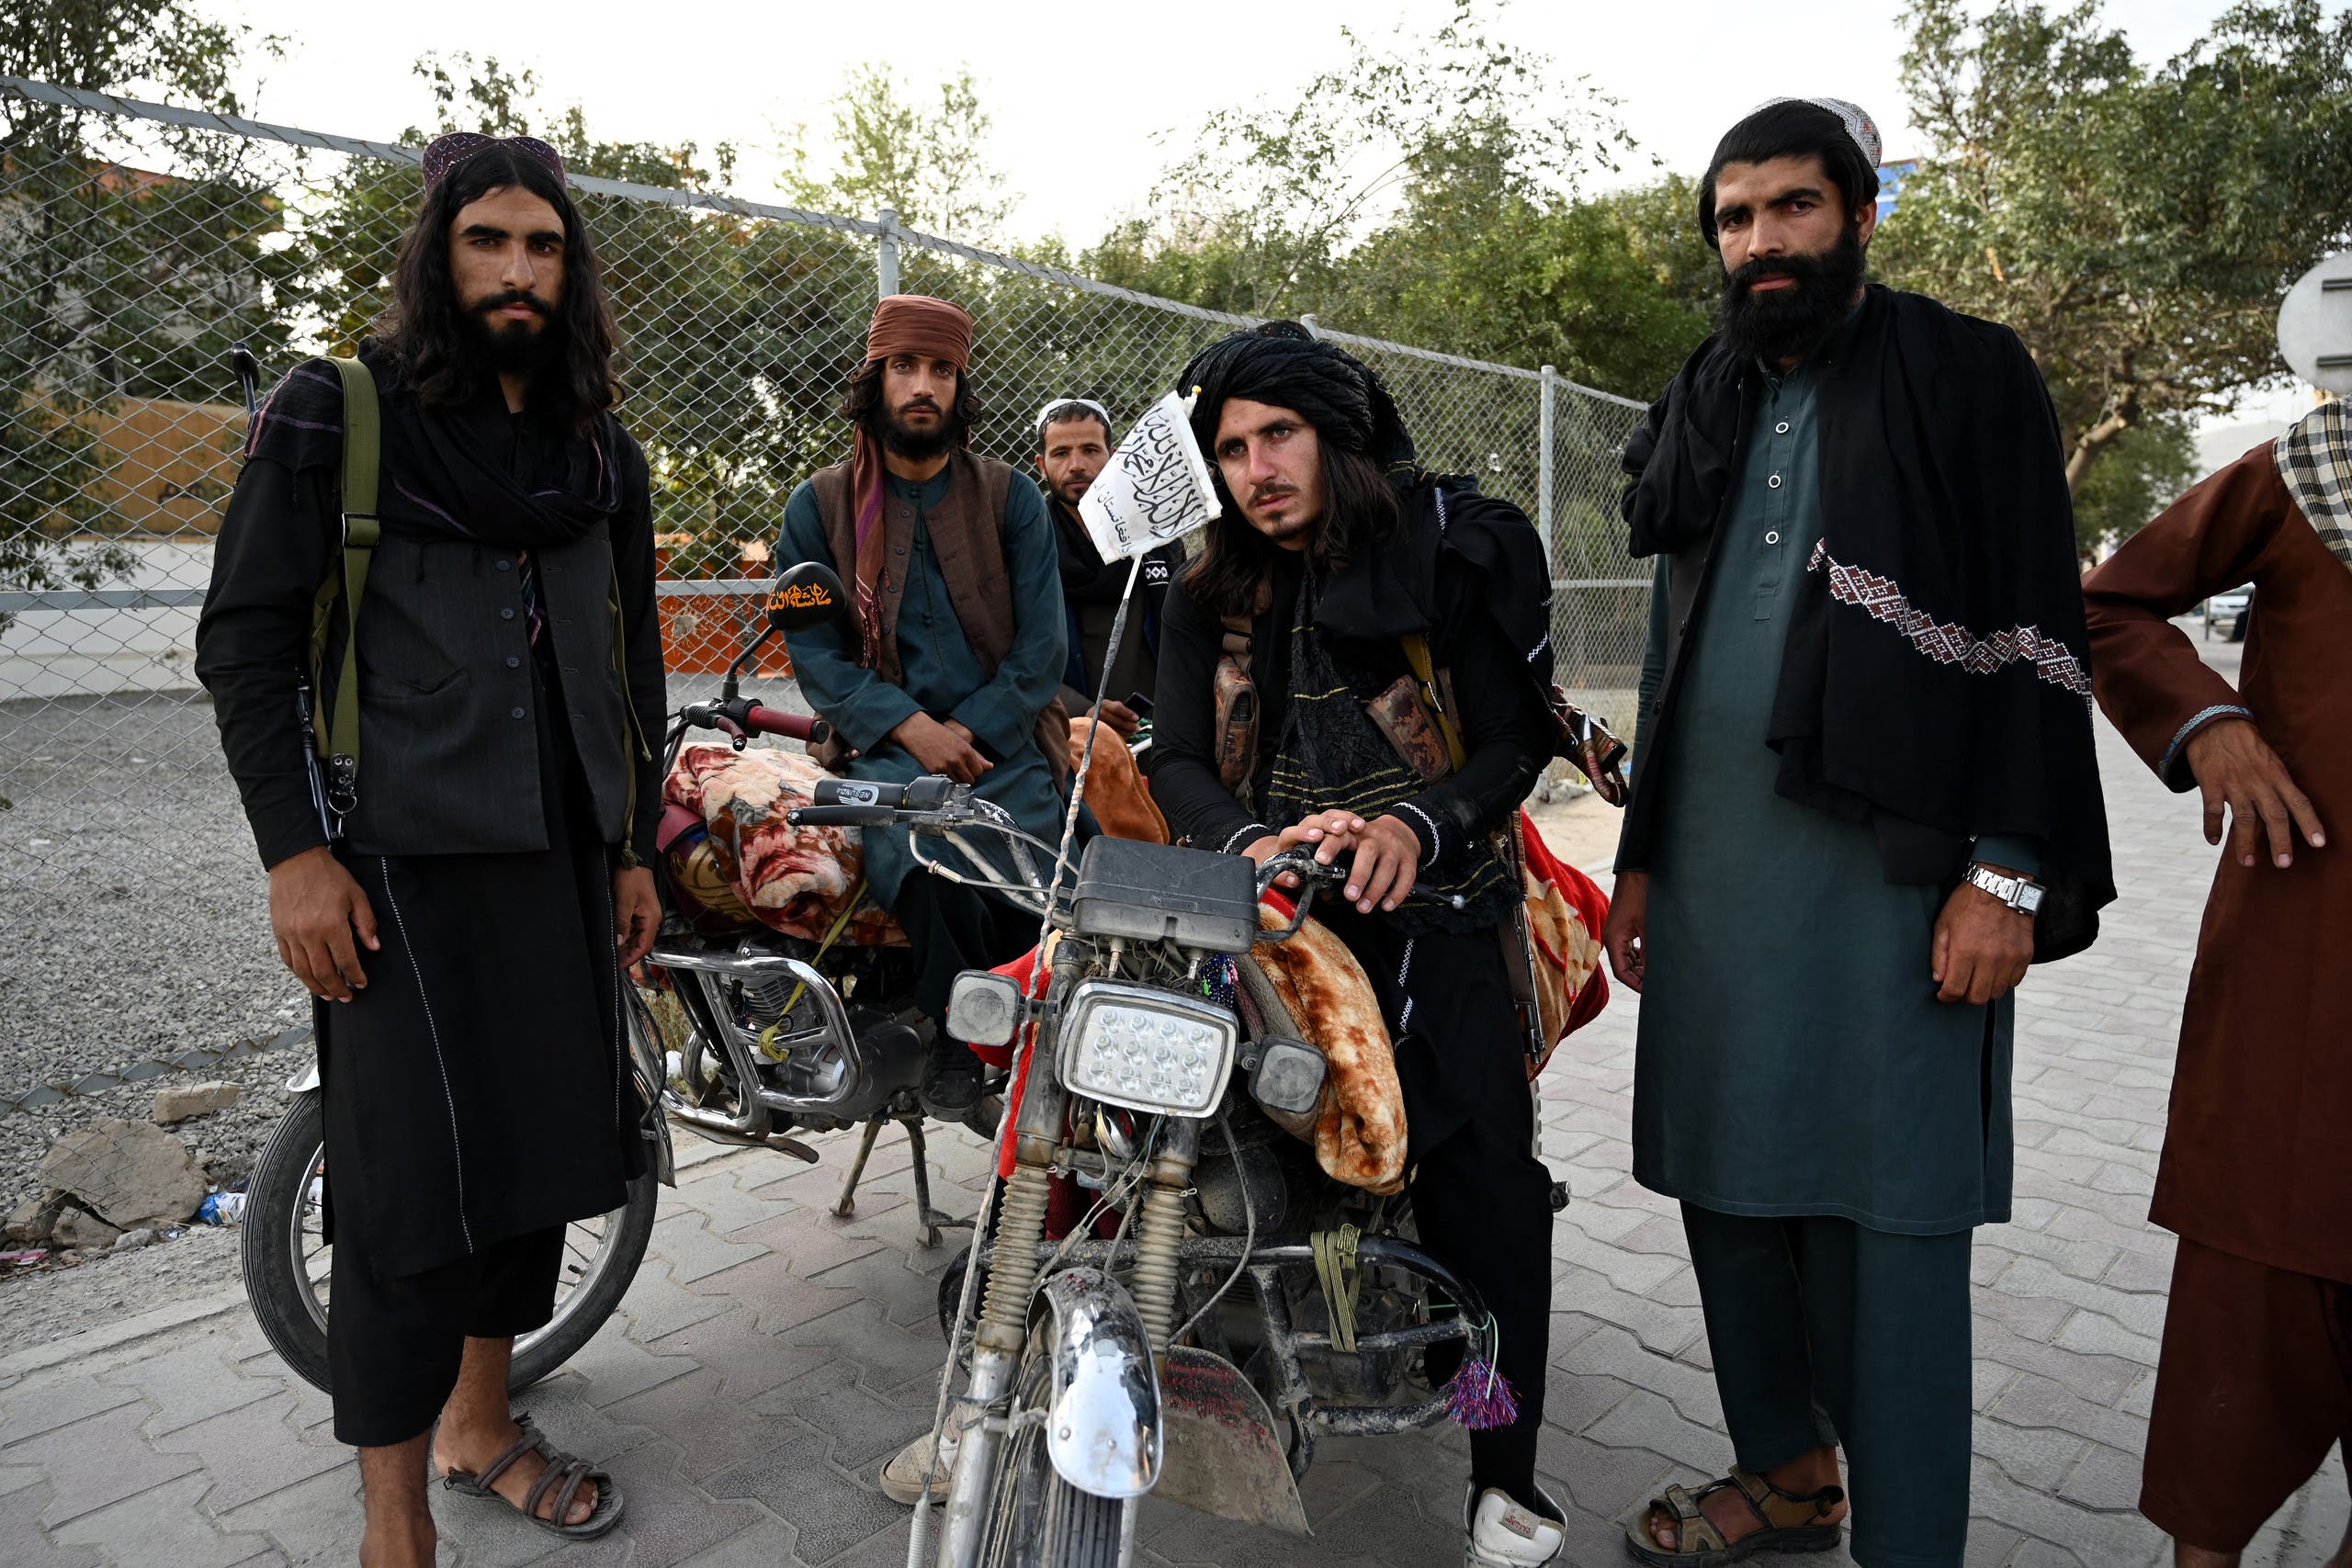 عناصر من حركة طالبان